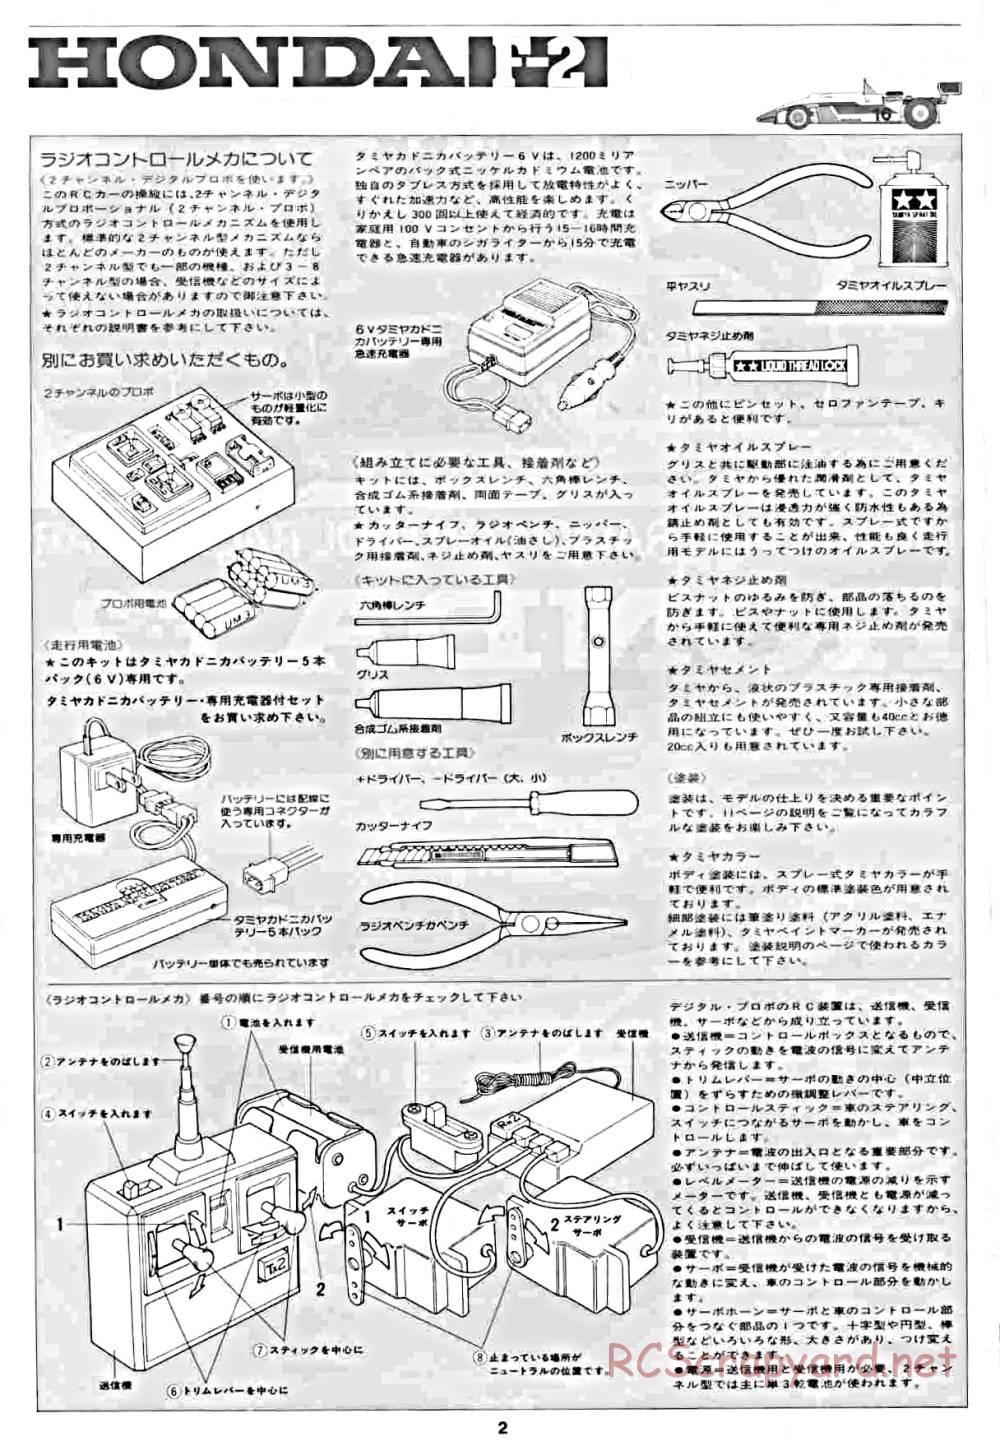 Tamiya - Honda F2 (CS) - 58030 - Manual - Page 2